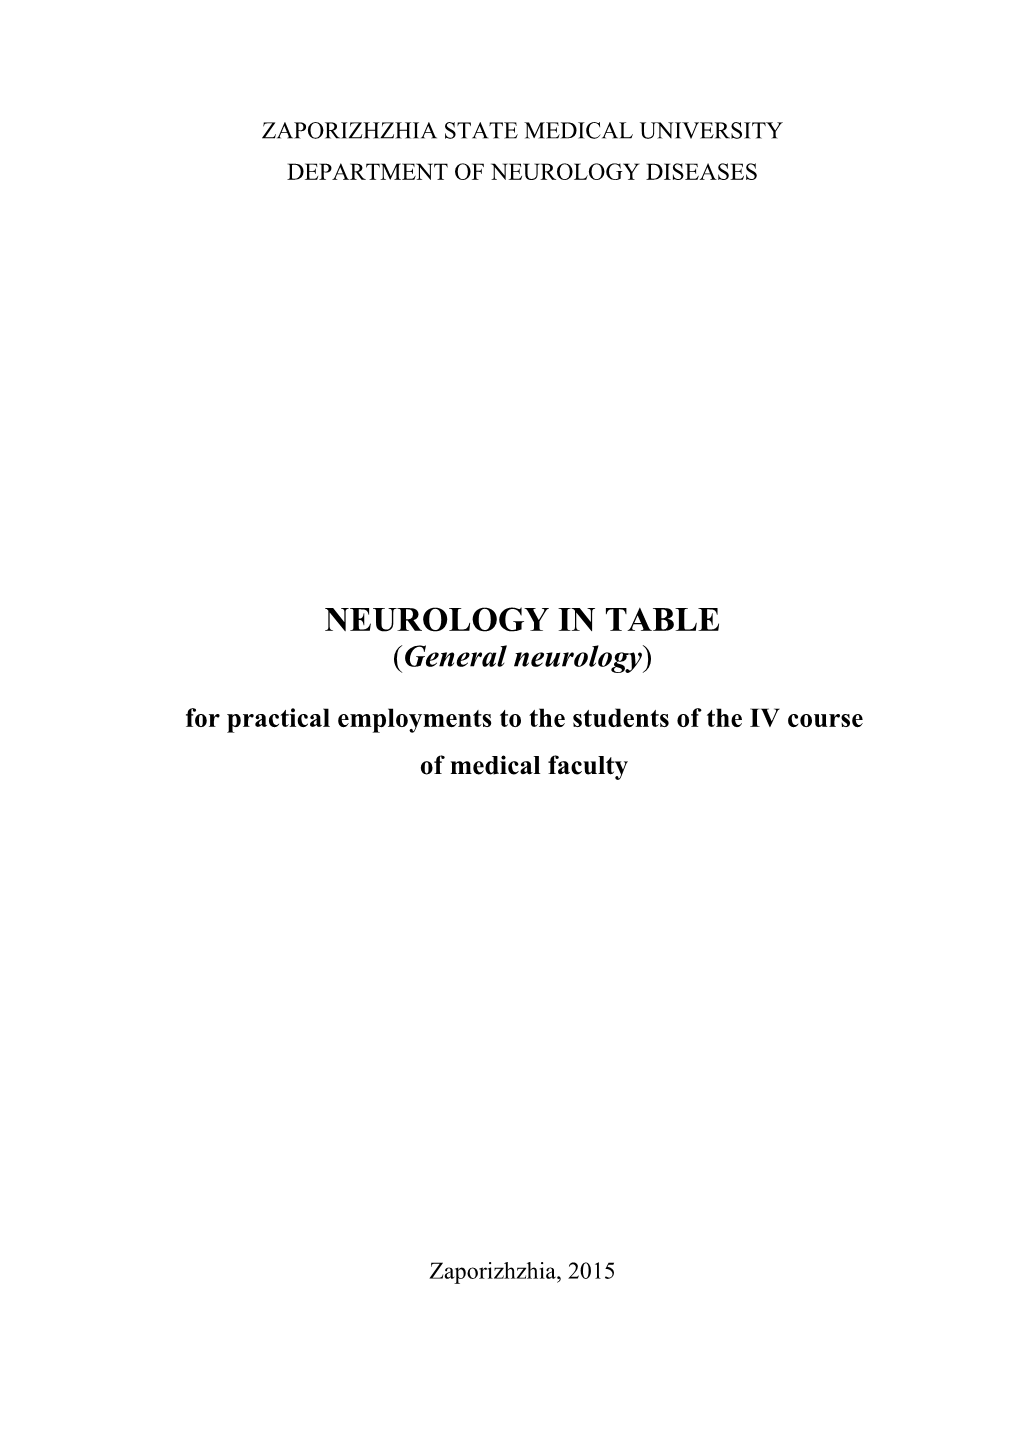 NEUROLOGY in TABLE.Pdf